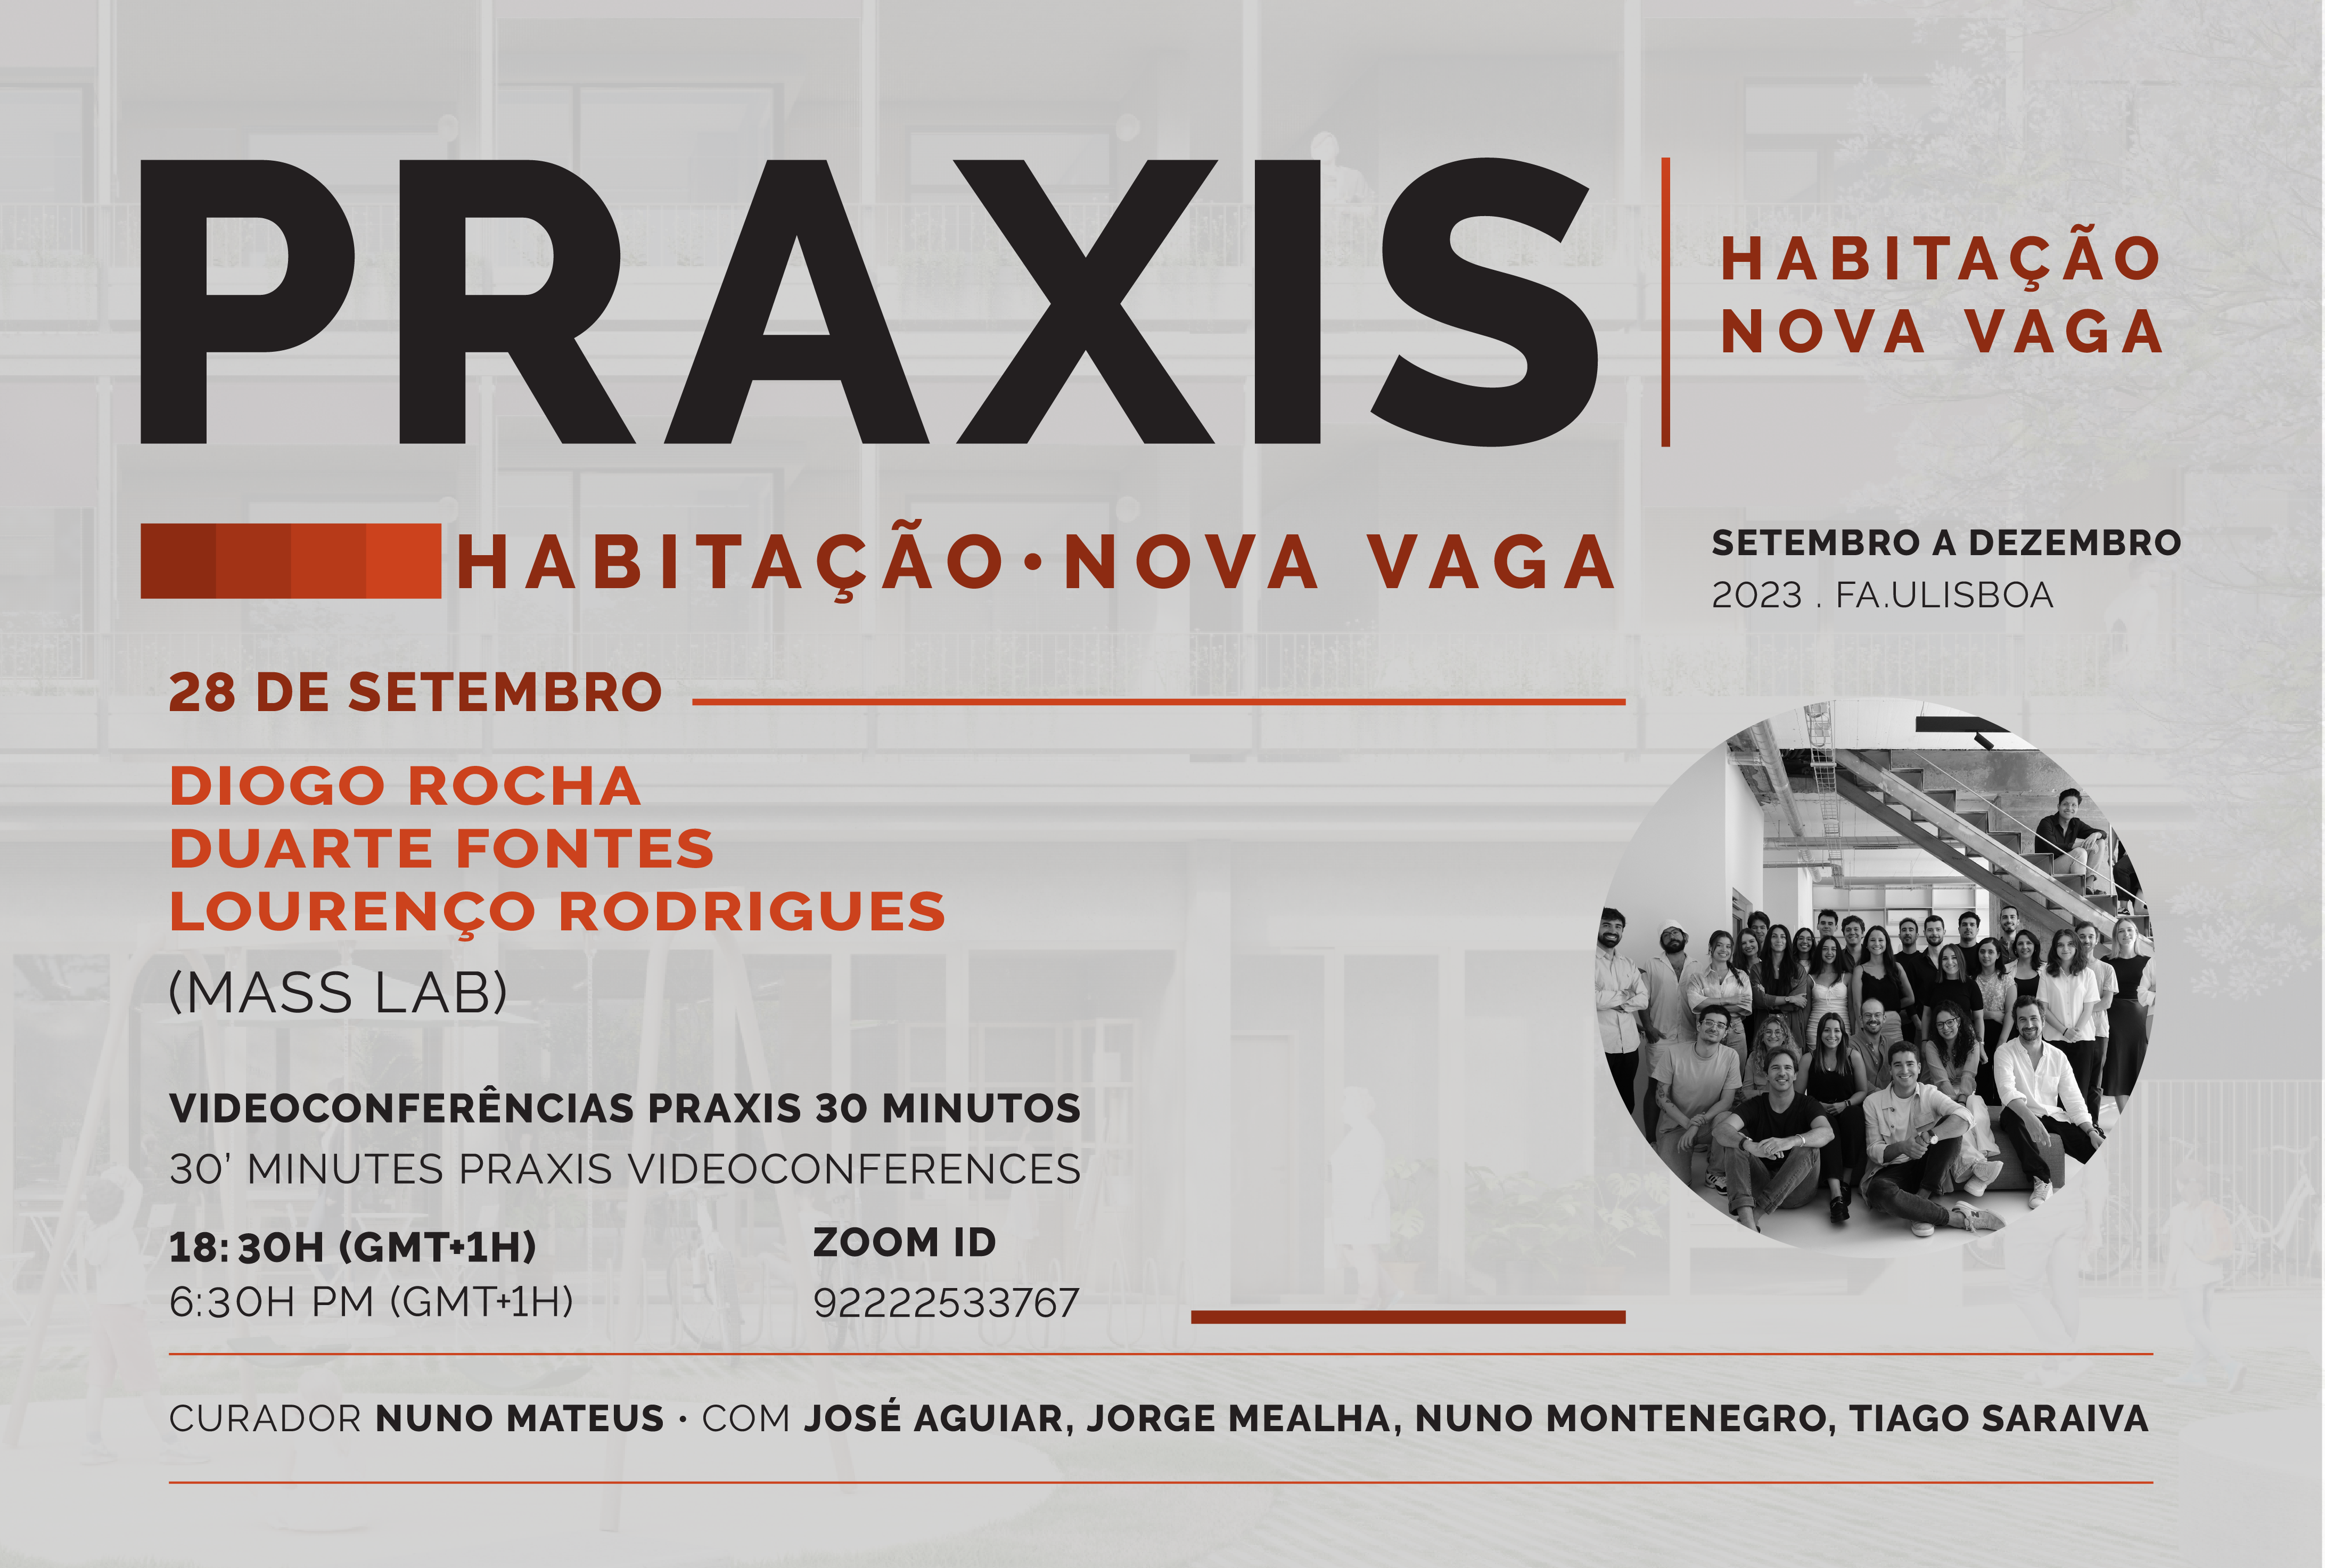 Conferências Praxis | Habitação Nova Vaga, dia 28 de setembro, 18h30, online, com MASS LAB 